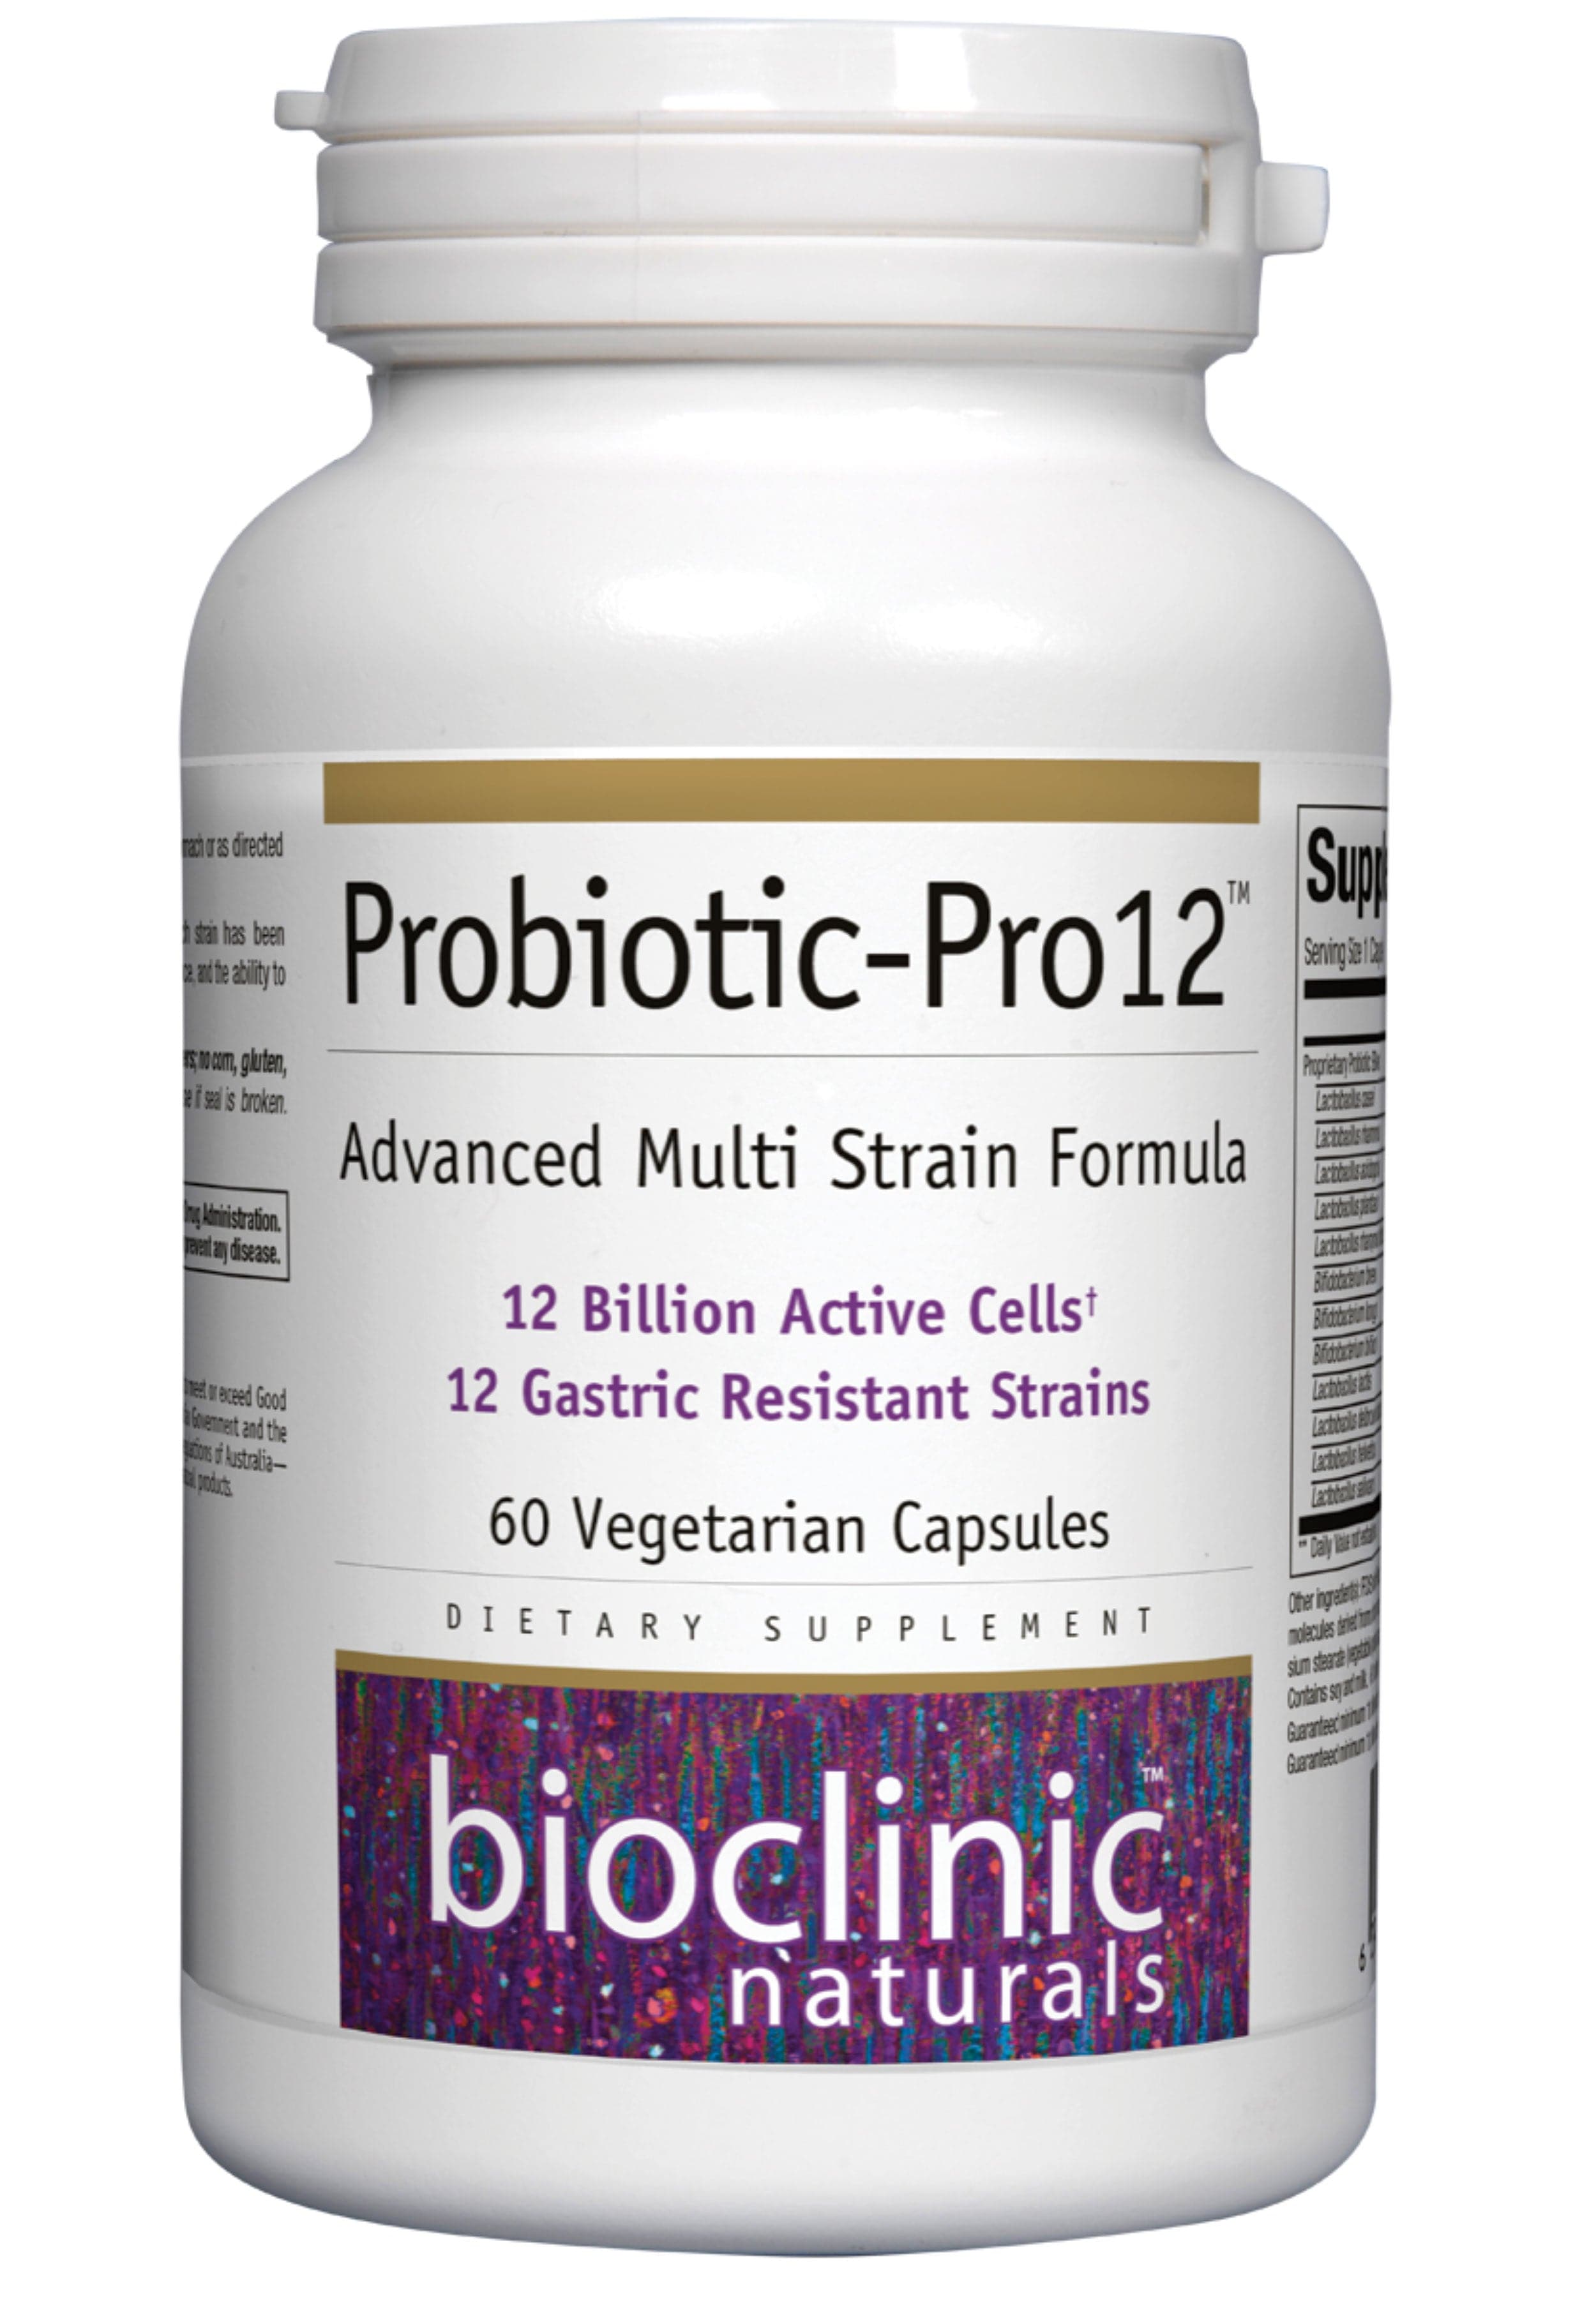 Bioclinic Naturals Probiotic-Pro12